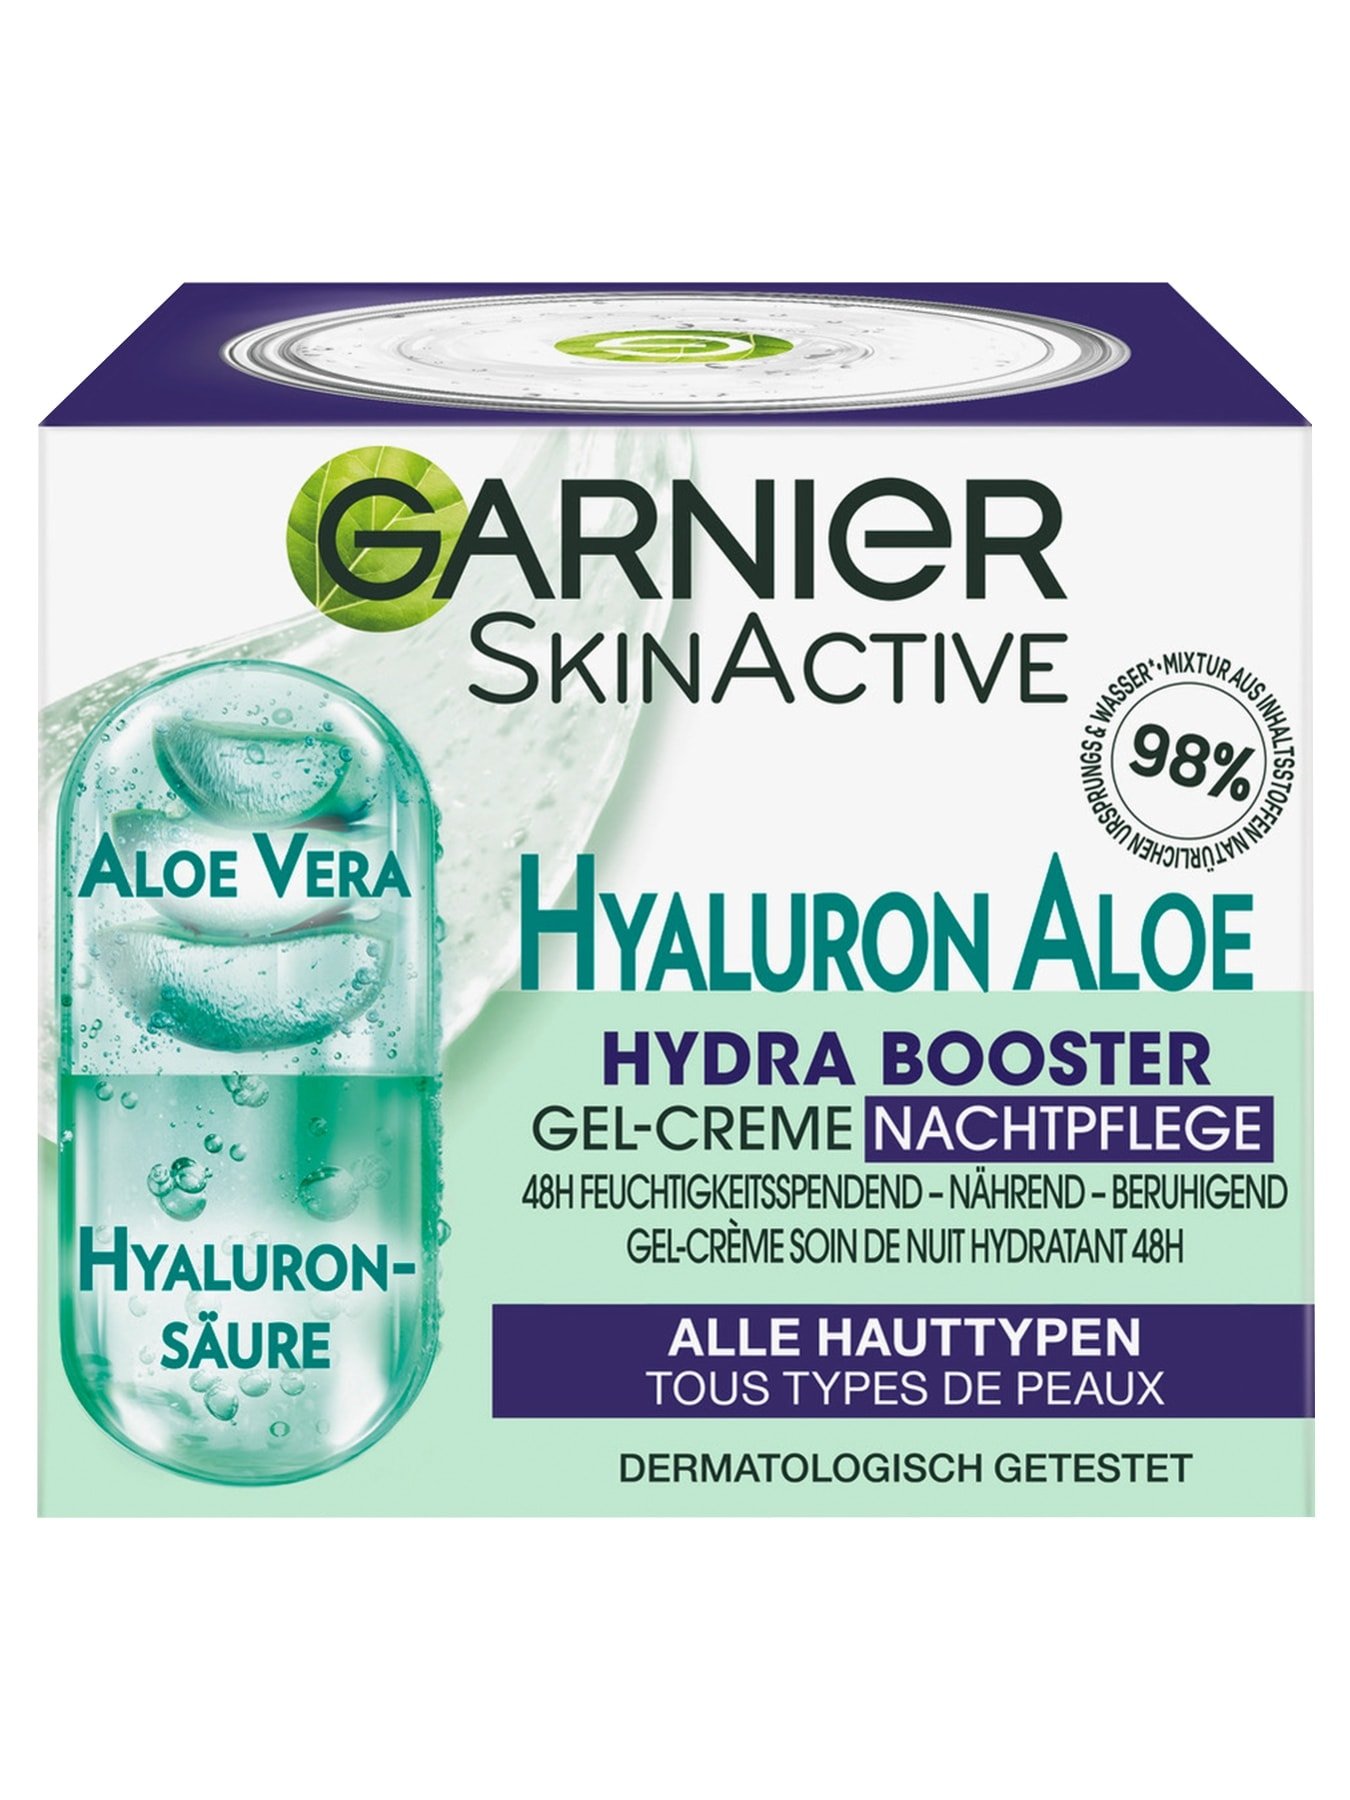 Hyaluron Aloe Hydra Booster Gel-Creme Nachtpflege | Garnier